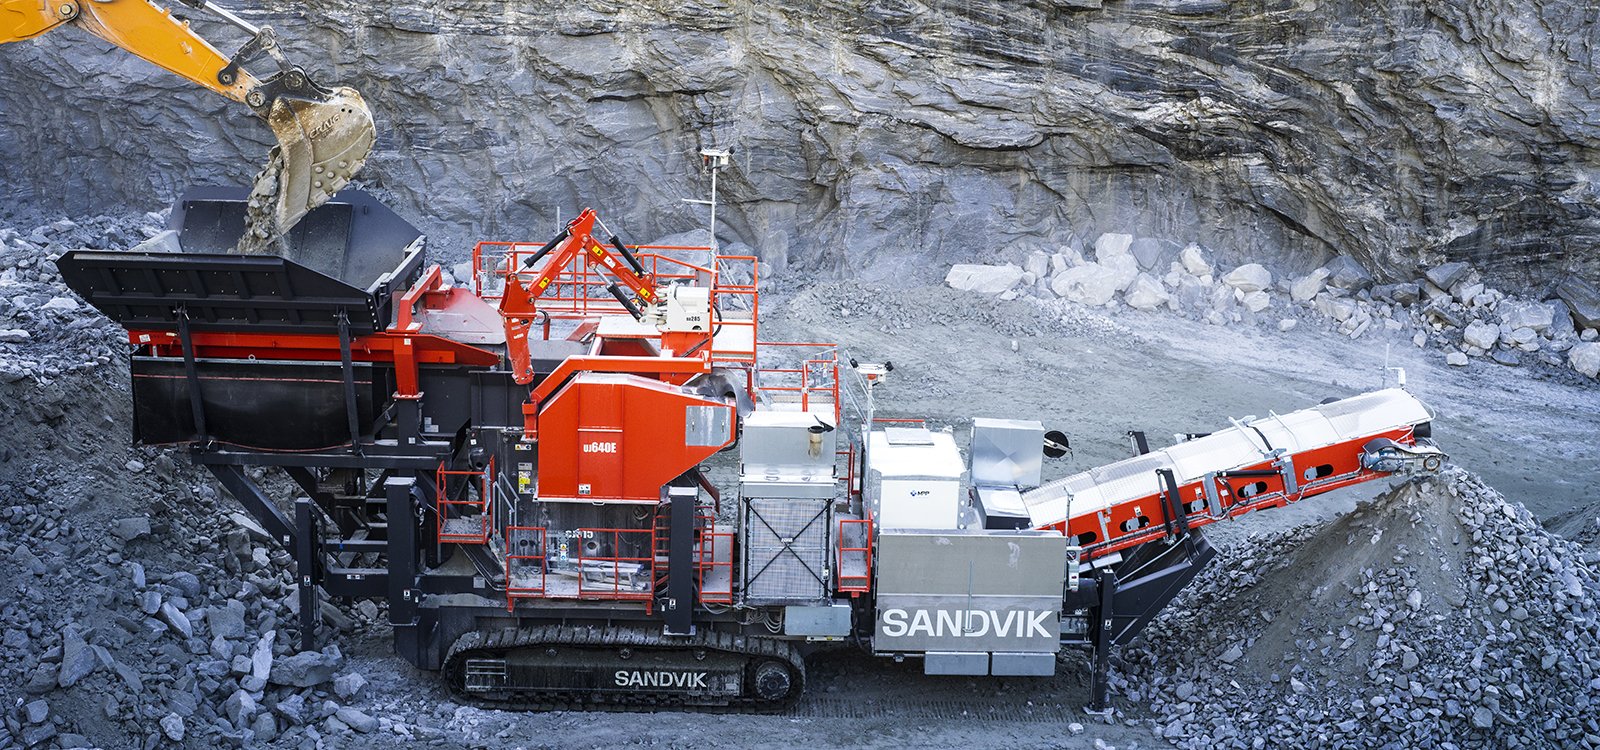 Дробилка Sandvik UJ640 оборудована воронкой бункерного питателя объемом 18 кубометров, обеспечивающим более быструю загрузку.